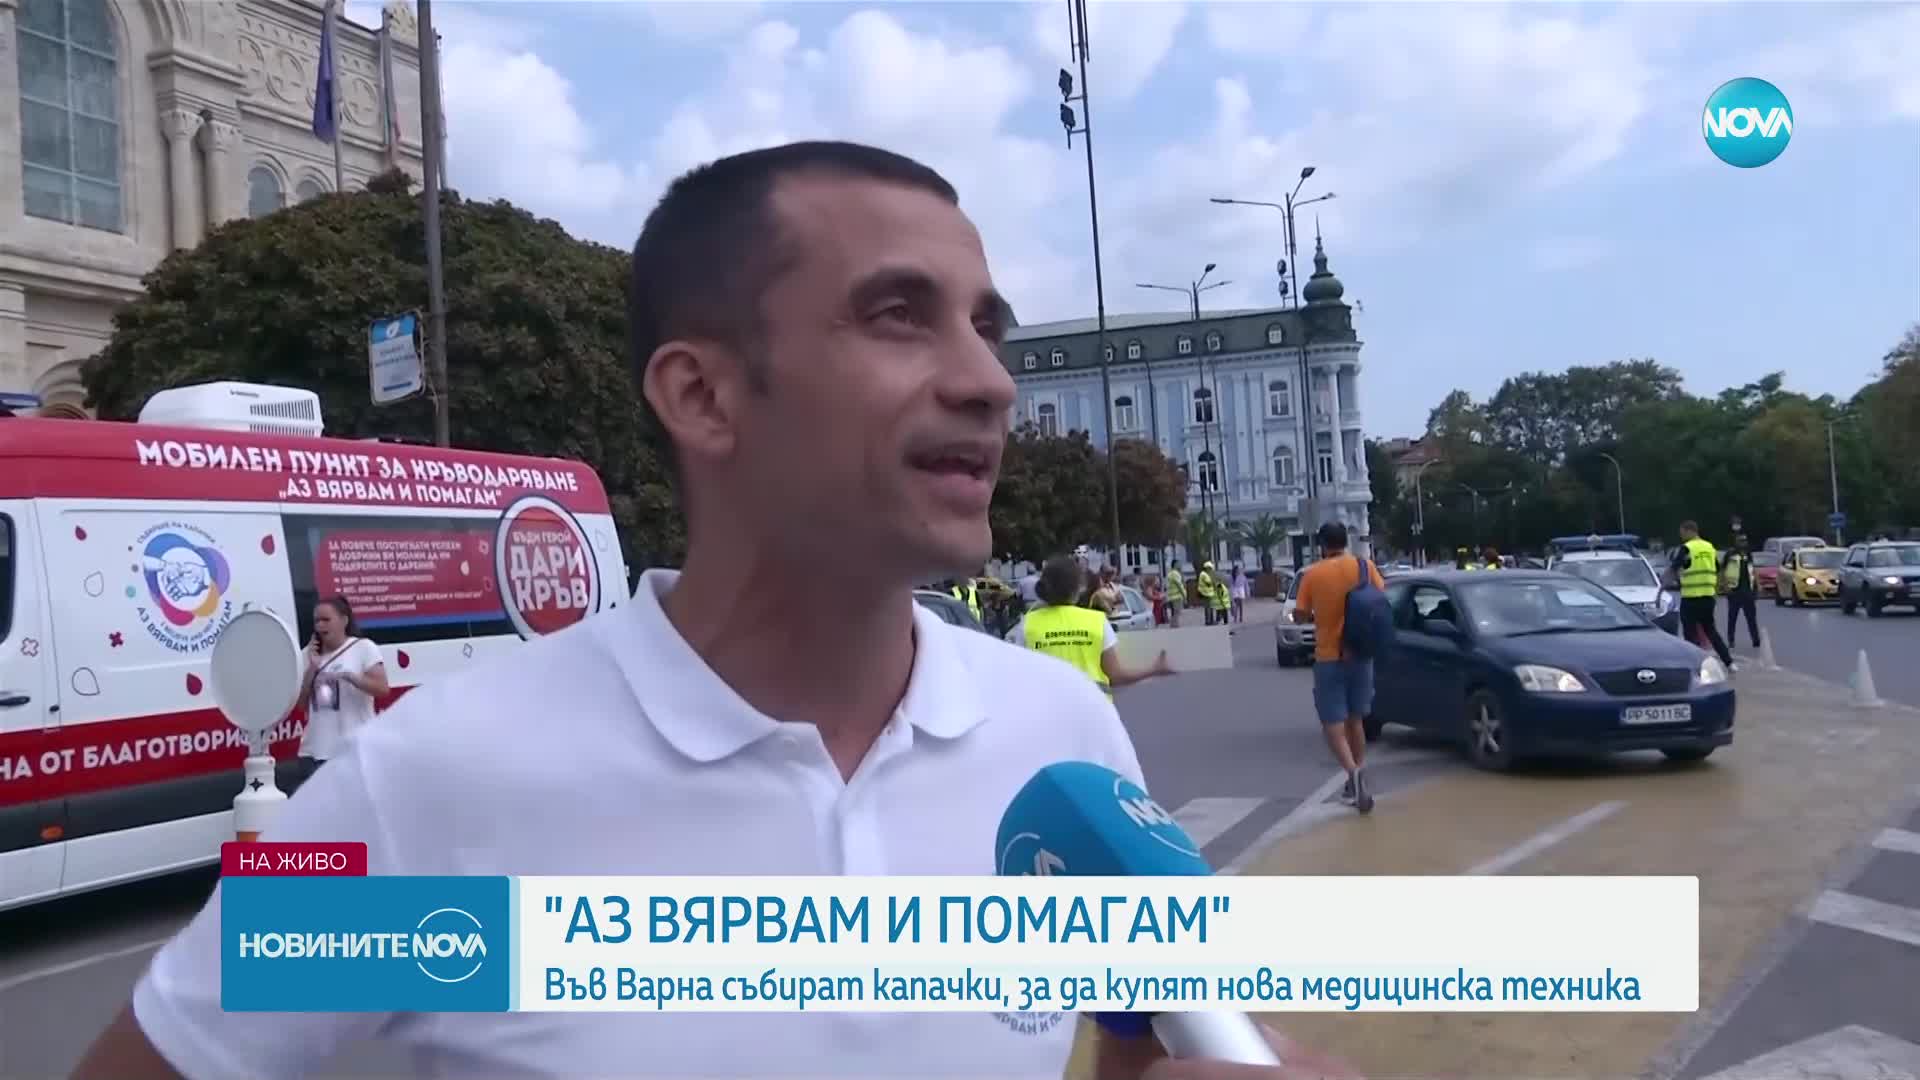 "Аз вярвам и помагам": Благотворителна кампания за събиране на капачки във Варна